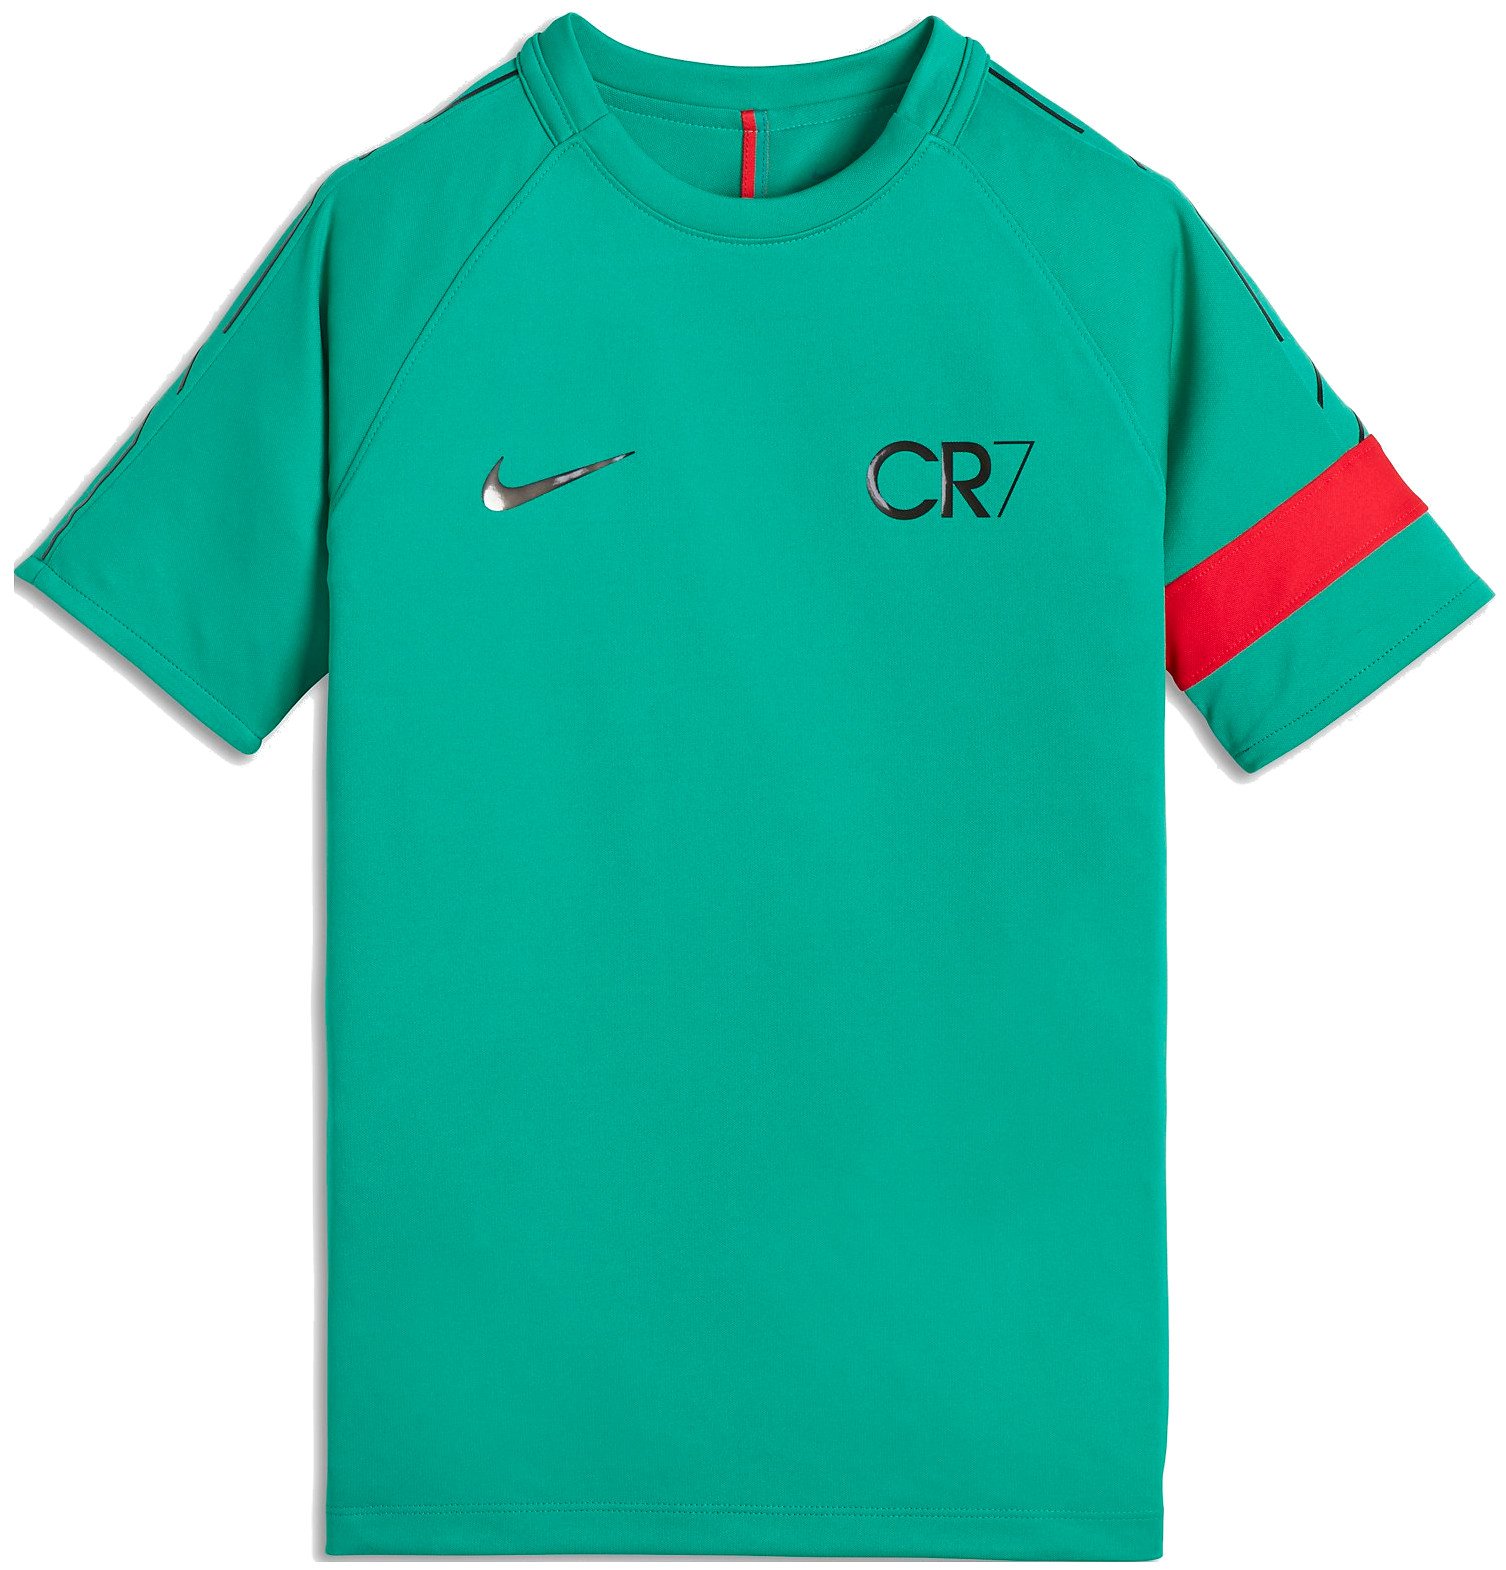 Dětské fotbalové tričko s krátkým rukávem Nike Dry Academy CR7